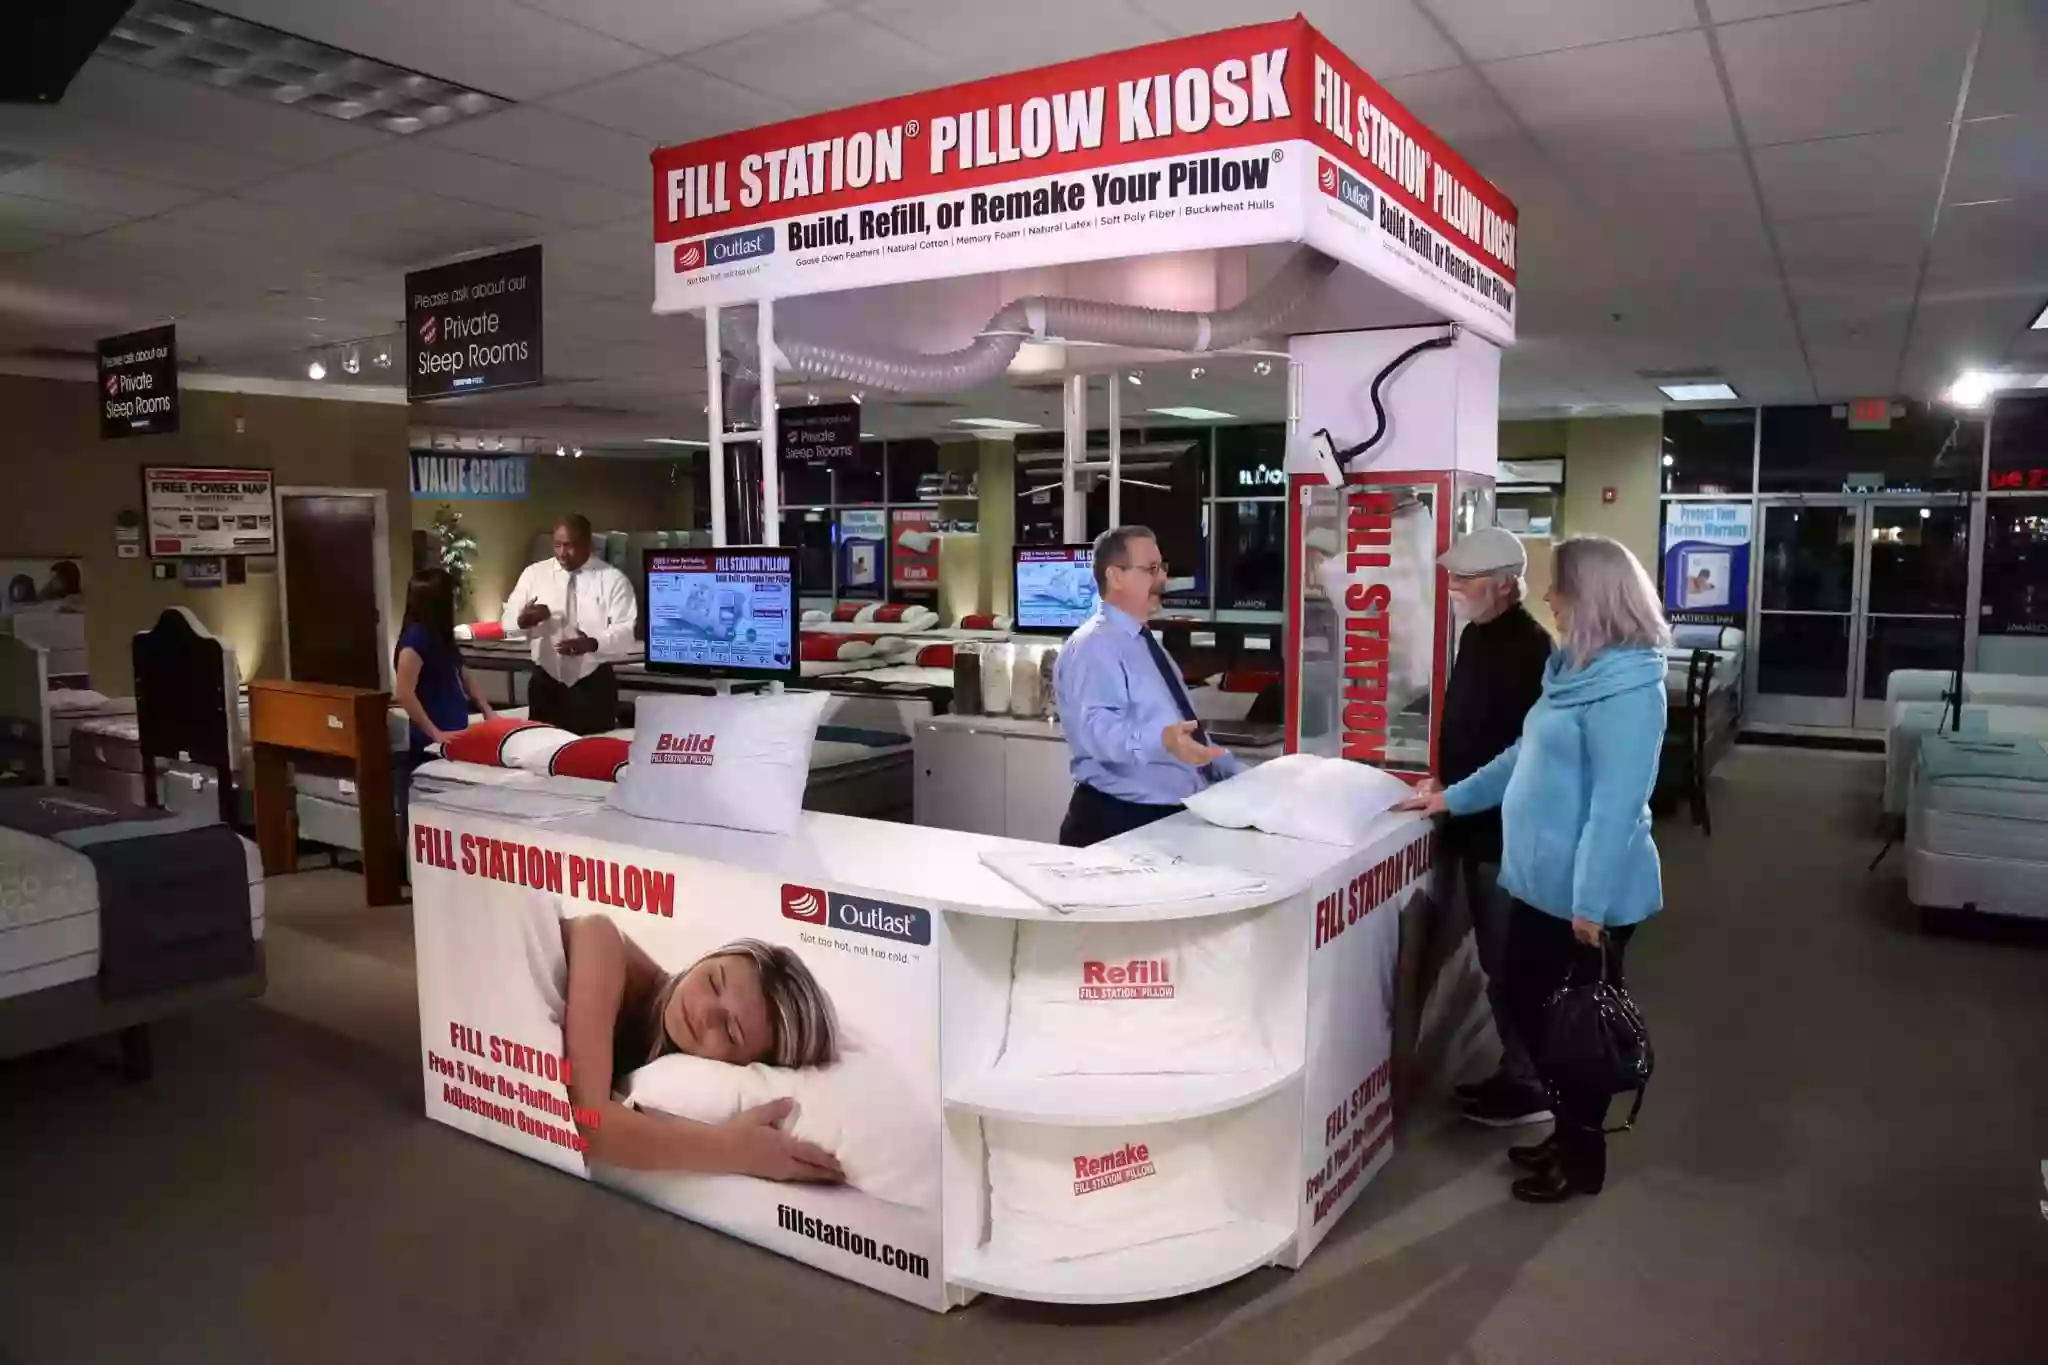 Fill Station Pillow Kiosk - A Purrfect Mattress